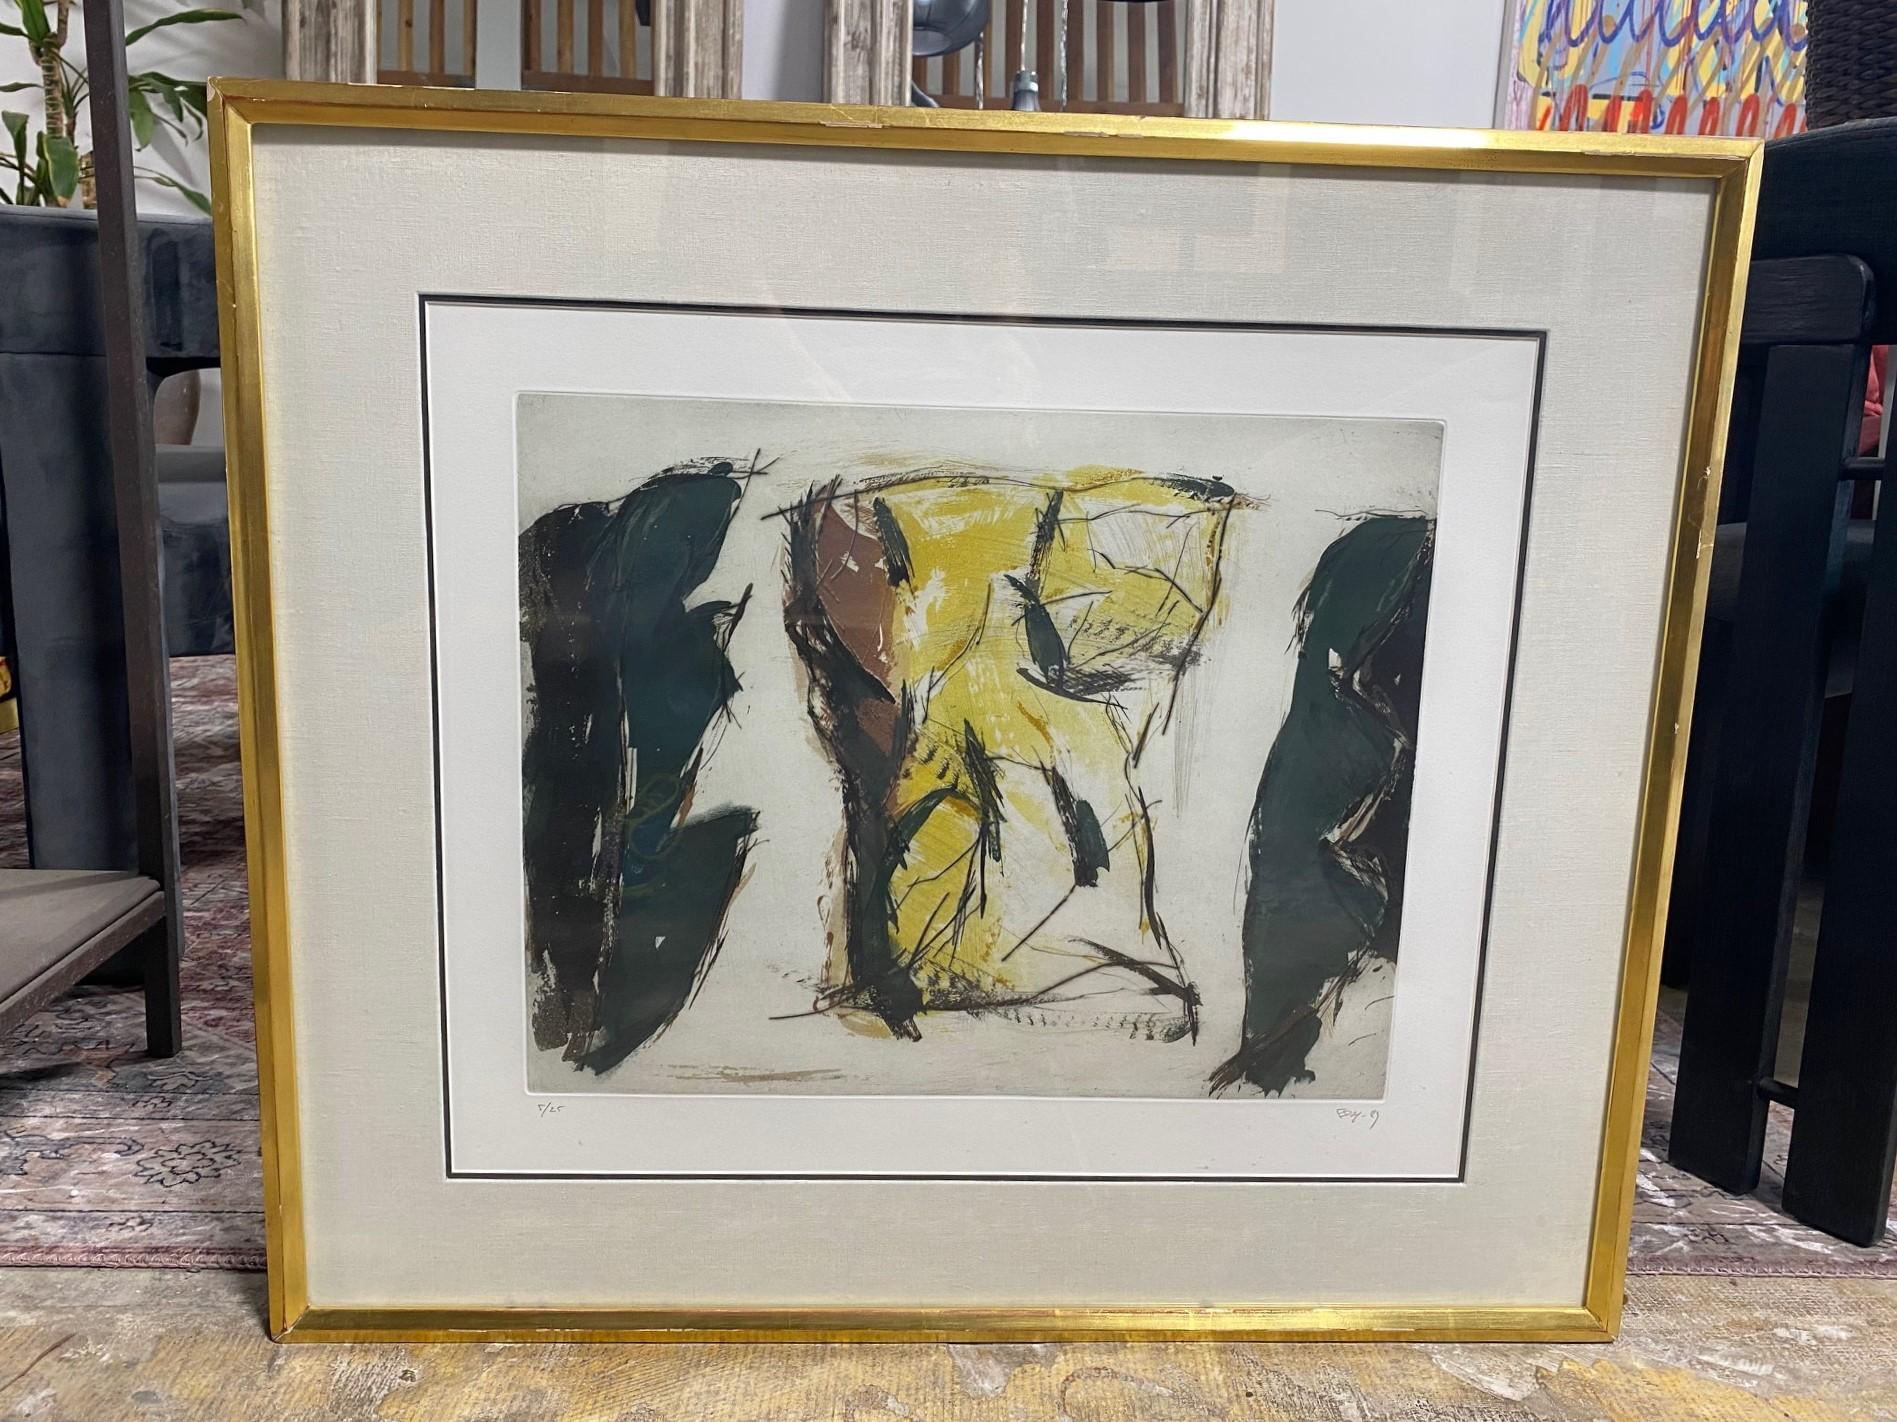 Une impression lithographique abstraite moderne attrayante qui semble représenter un torse/un corps humain - rappelant quelque peu les œuvres abstraites de Henry Moore. 

L'œuvre est signée au crayon, datée (1989) et numérotée (5/25) par